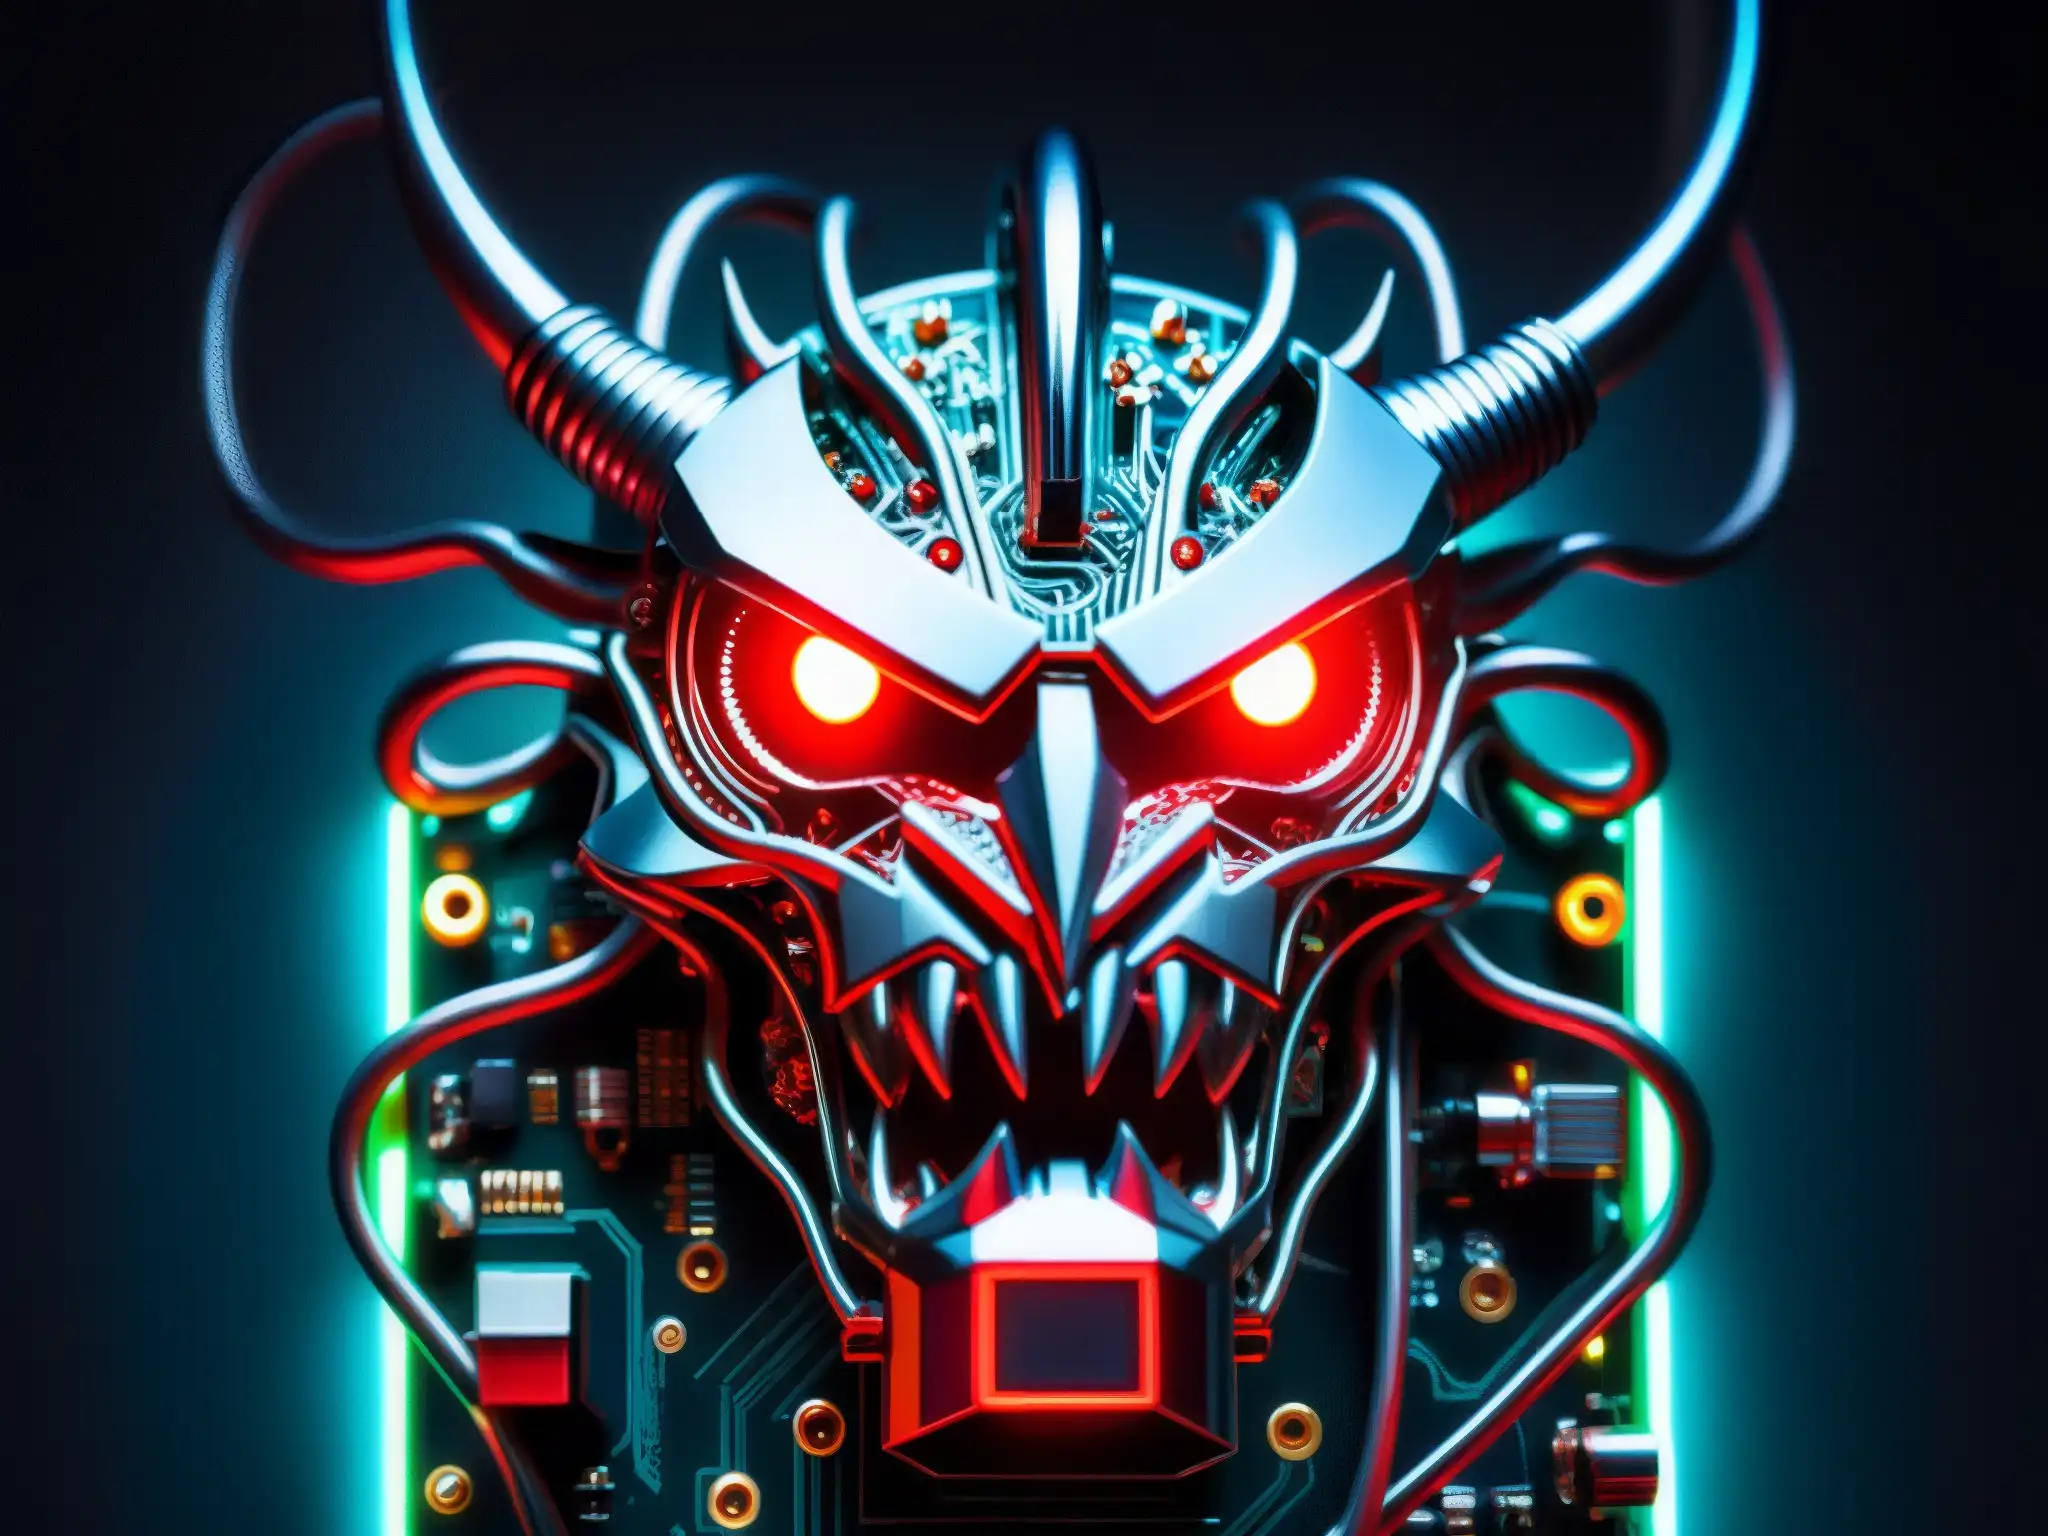 Un monstruo digital de aspecto metálico emerge entre cables y placas electrónicas, con ojos rojos brillantes y luces LED parpadeantes